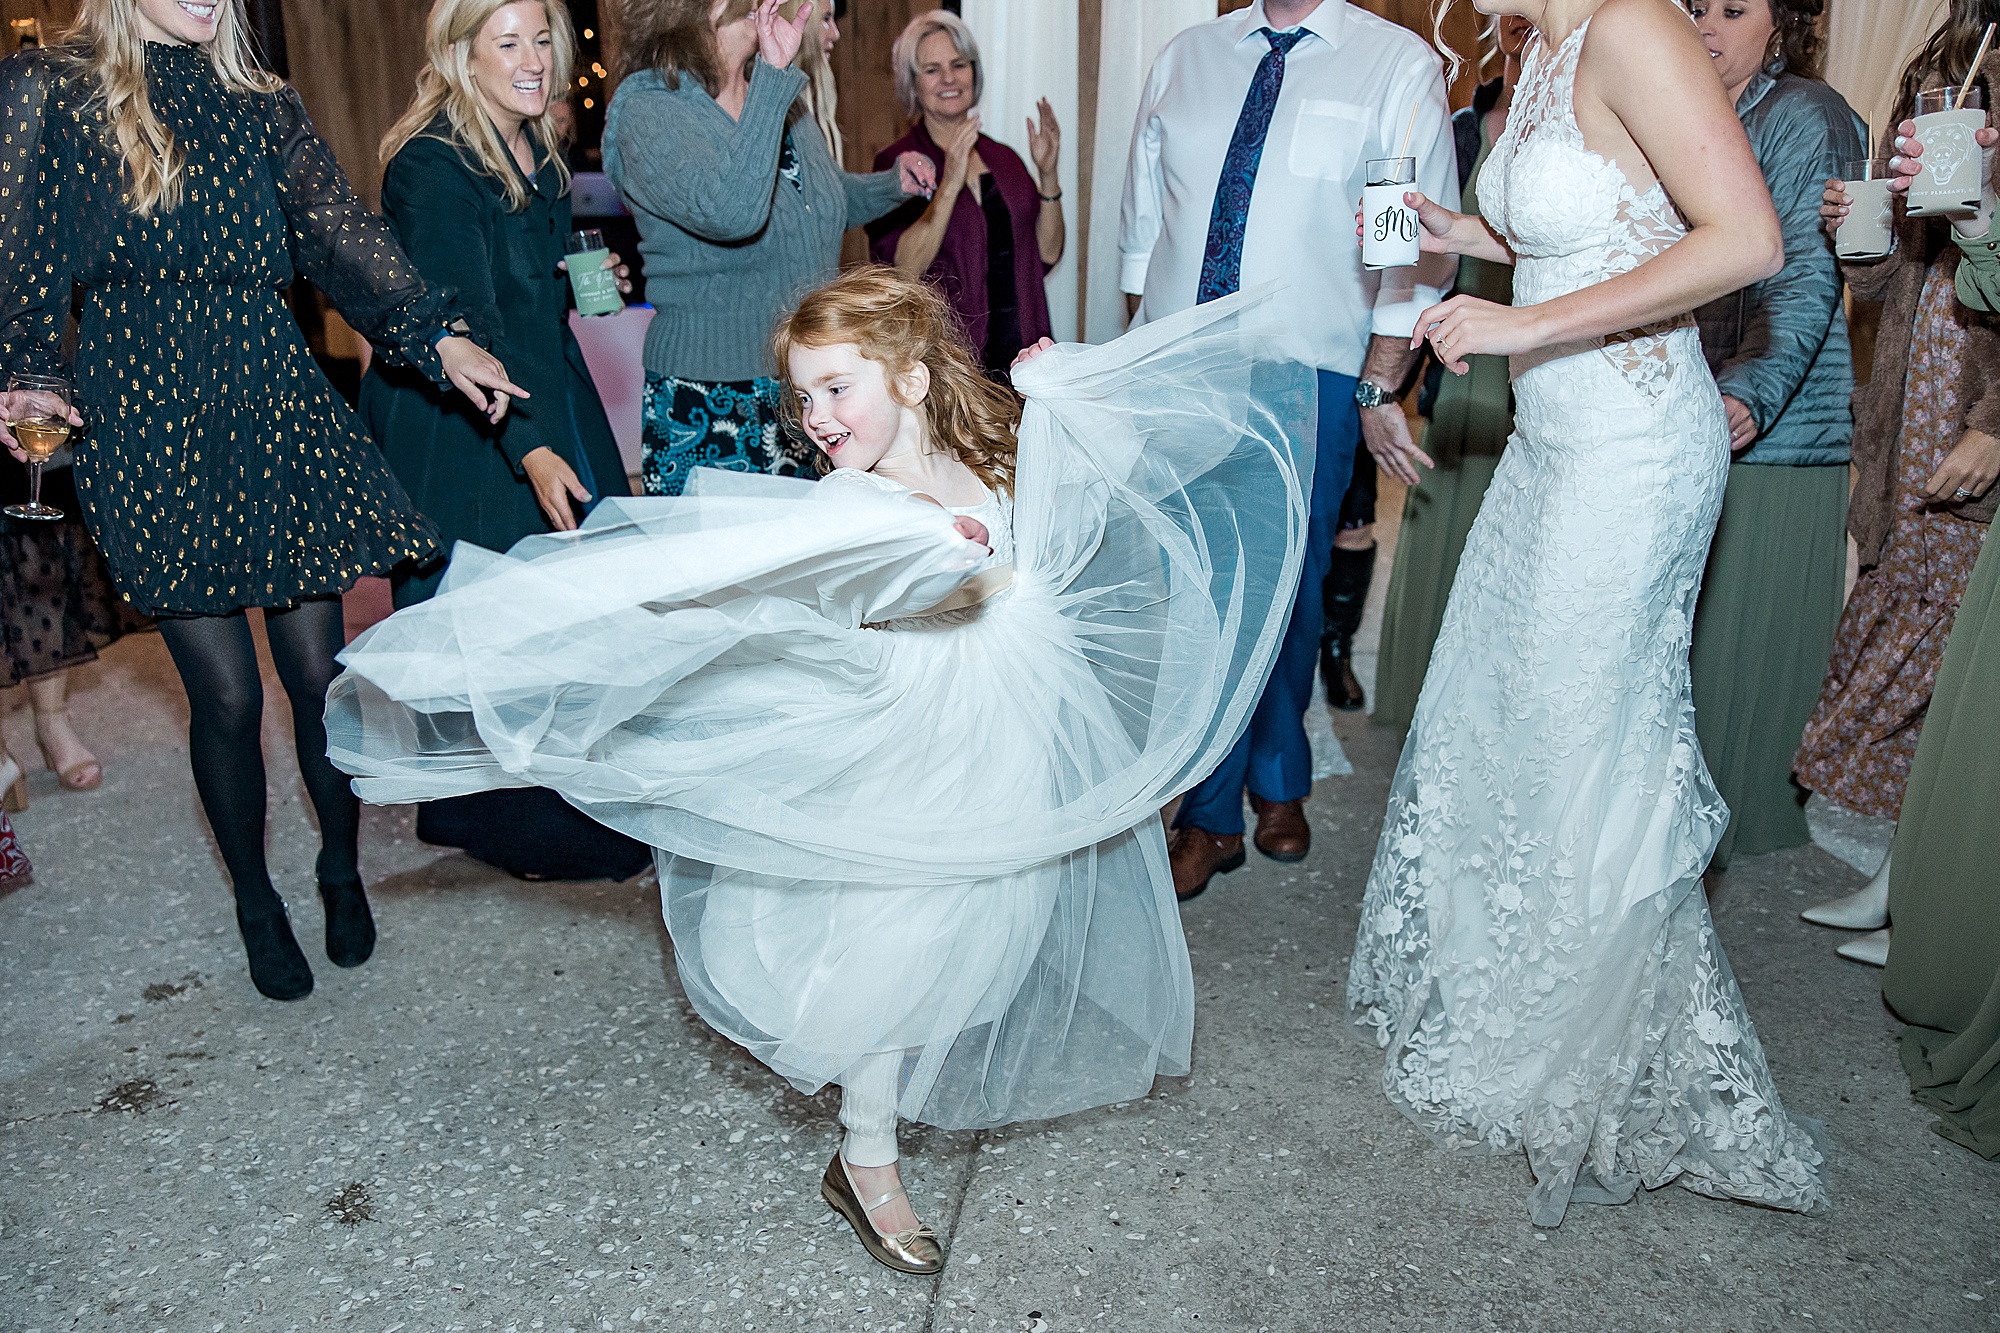 flower girl twirls her dress on dance floor